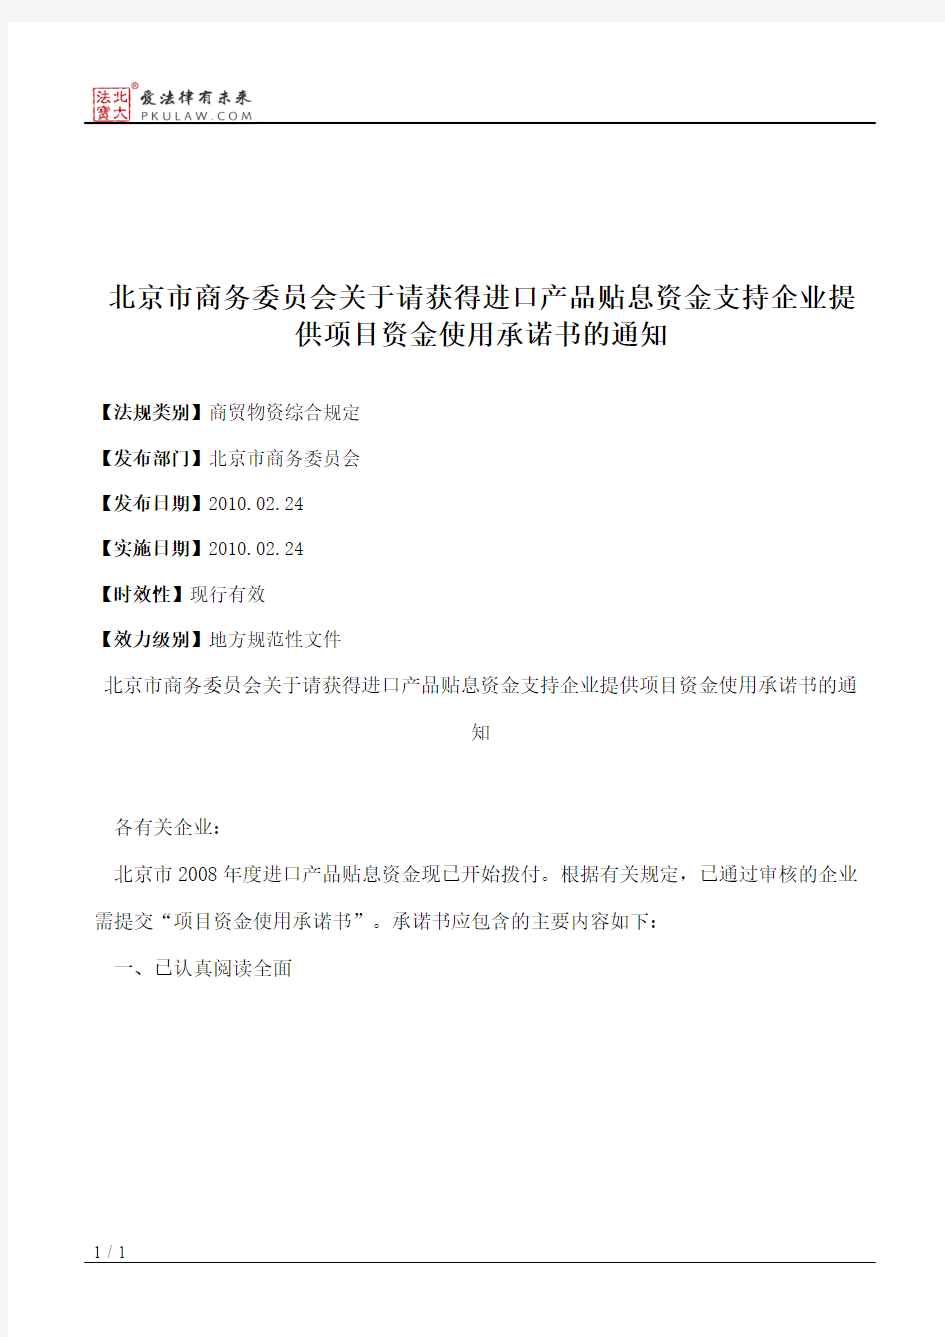 北京市商务委员会关于请获得进口产品贴息资金支持企业提供项目资